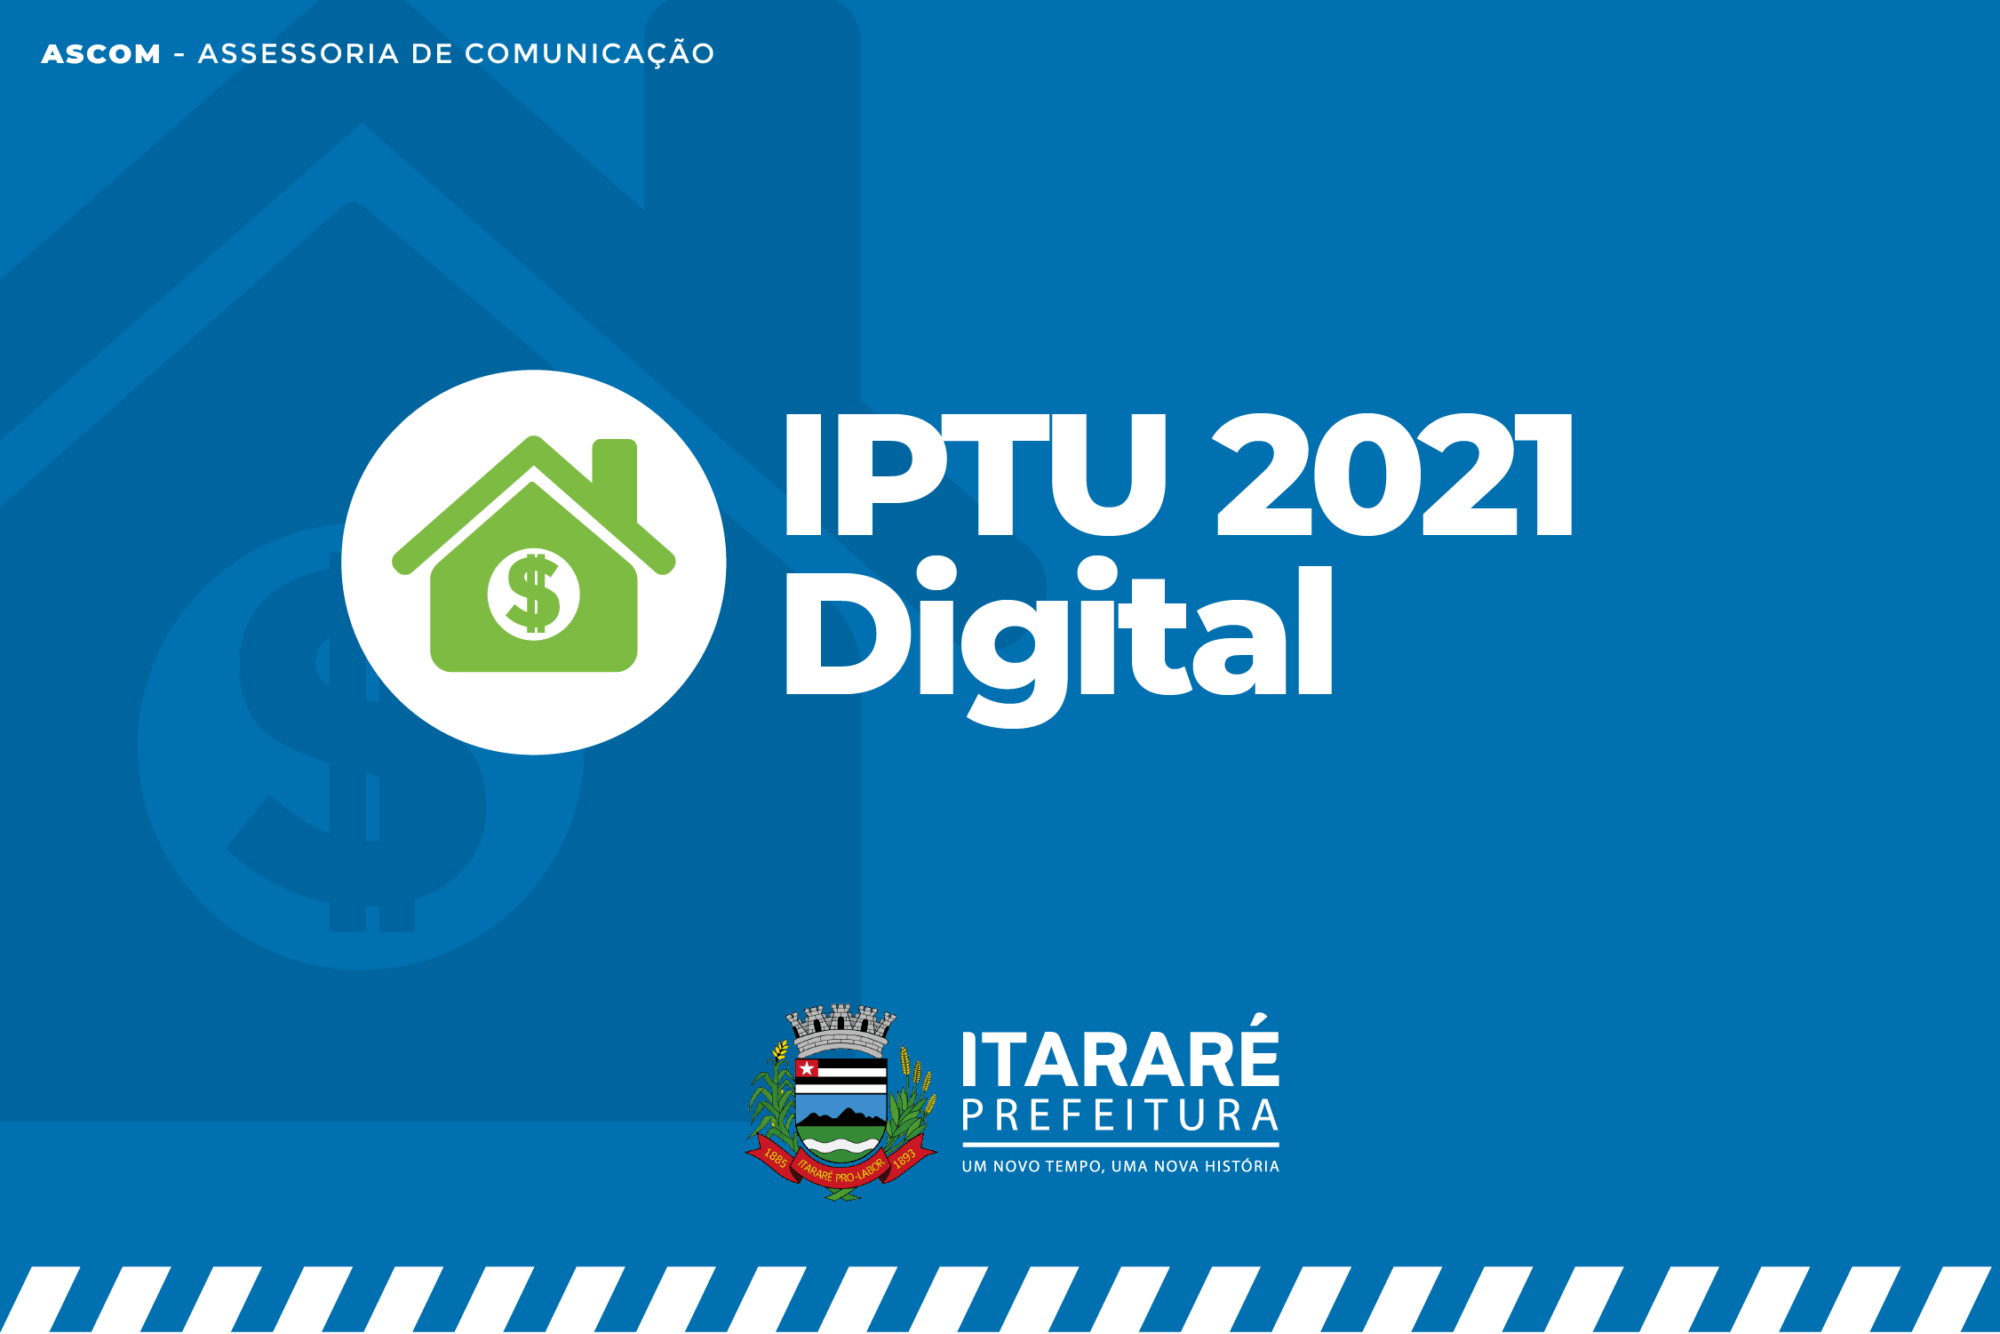 IPTU 2021 Digital: Prefeitura de Itararé (SP) disponibiliza carnê on-line e oferece maior comodidade aos contribuintes